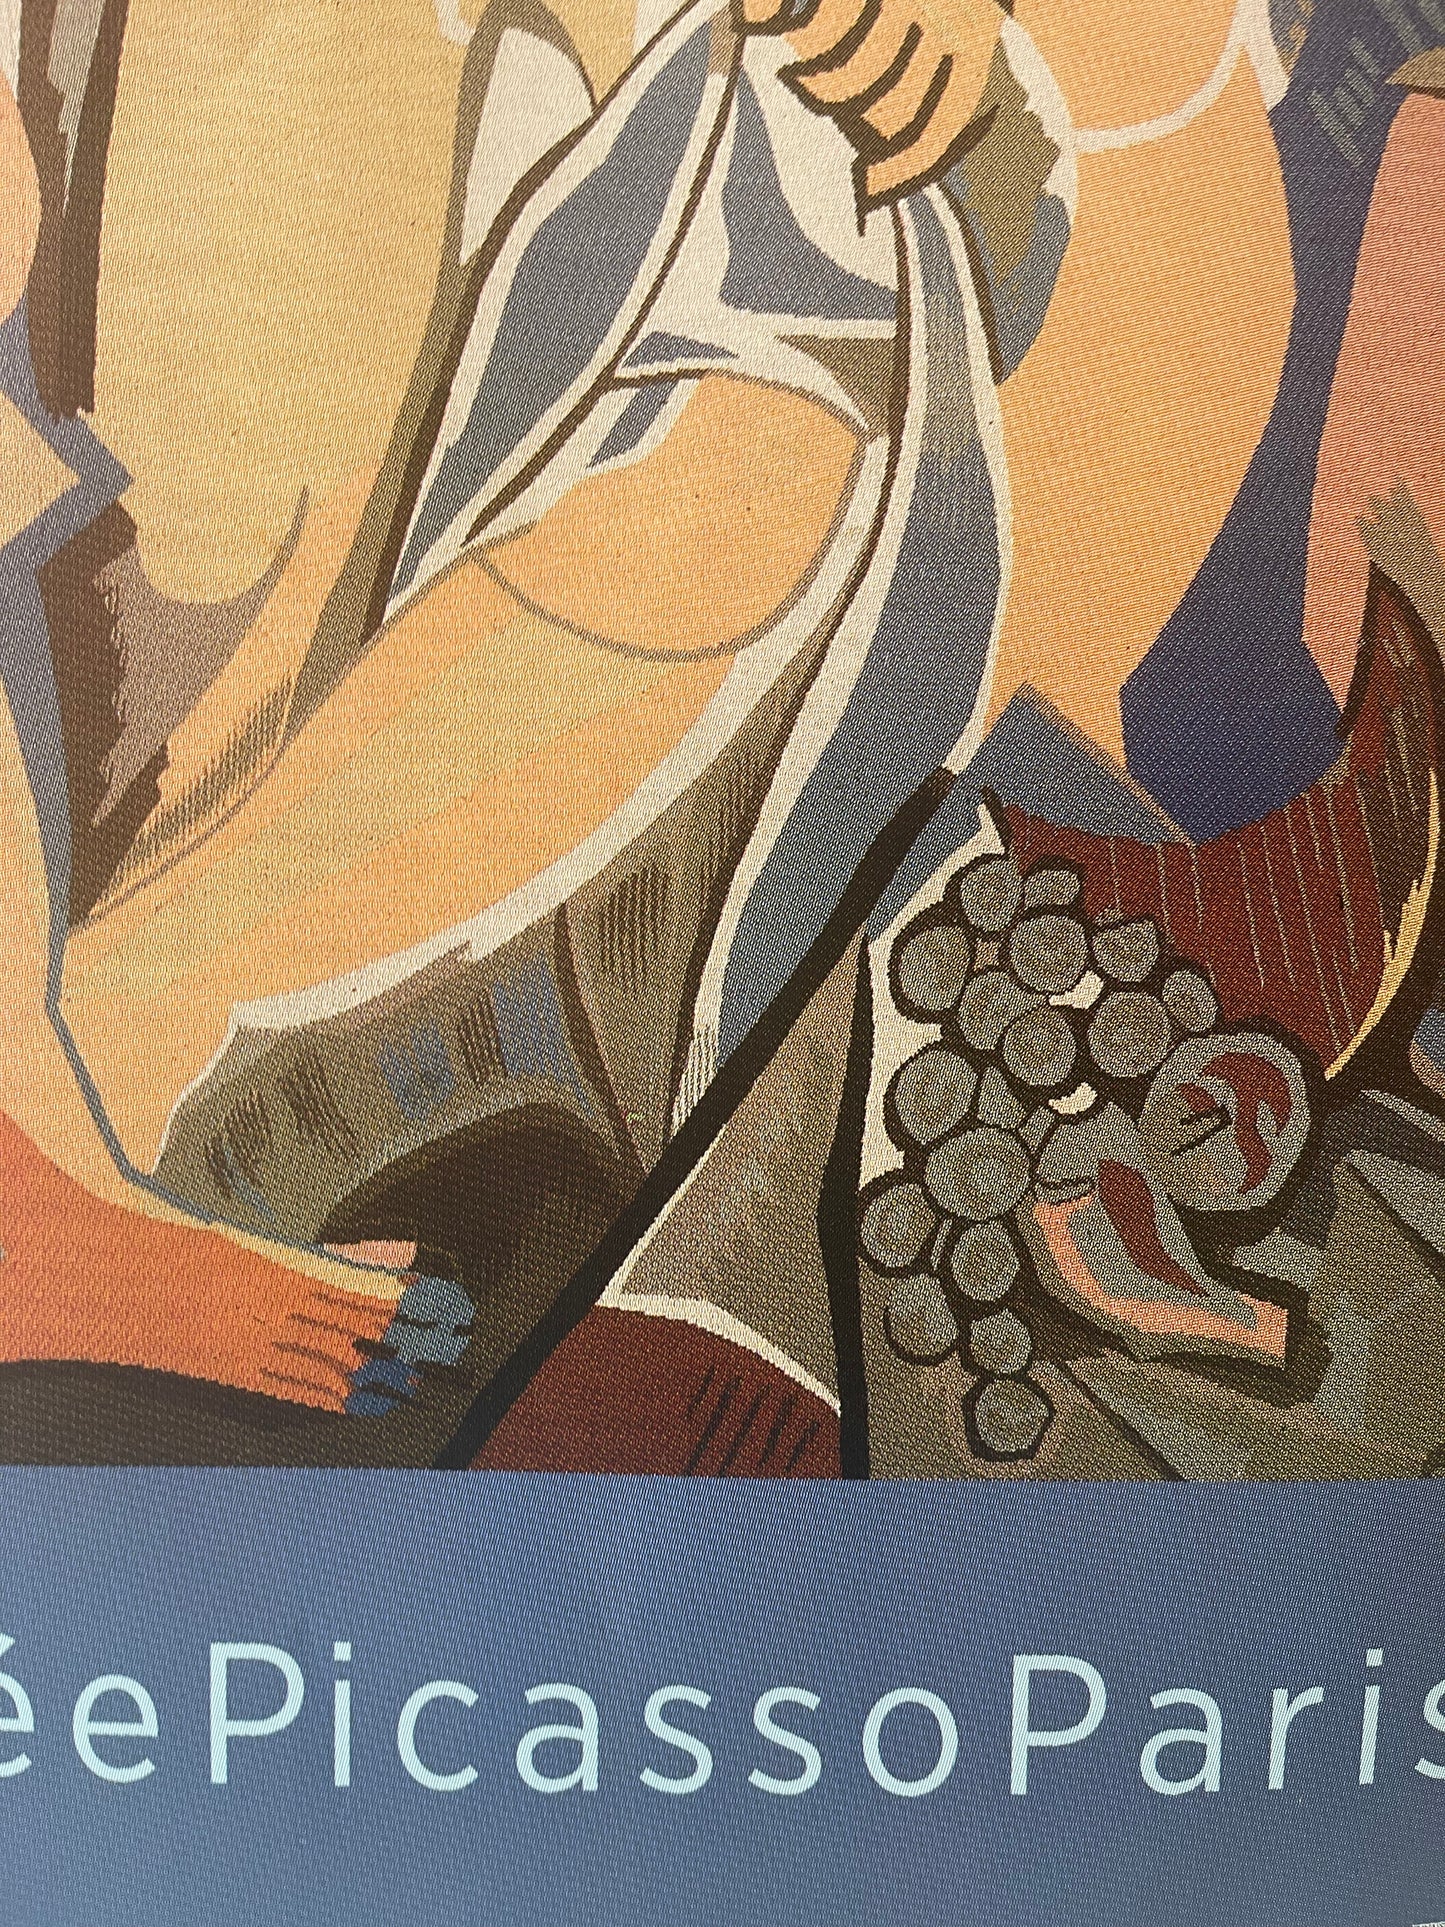 Picasso Exhibition Poster feat. 'Les Demoiselles d'Avignon'